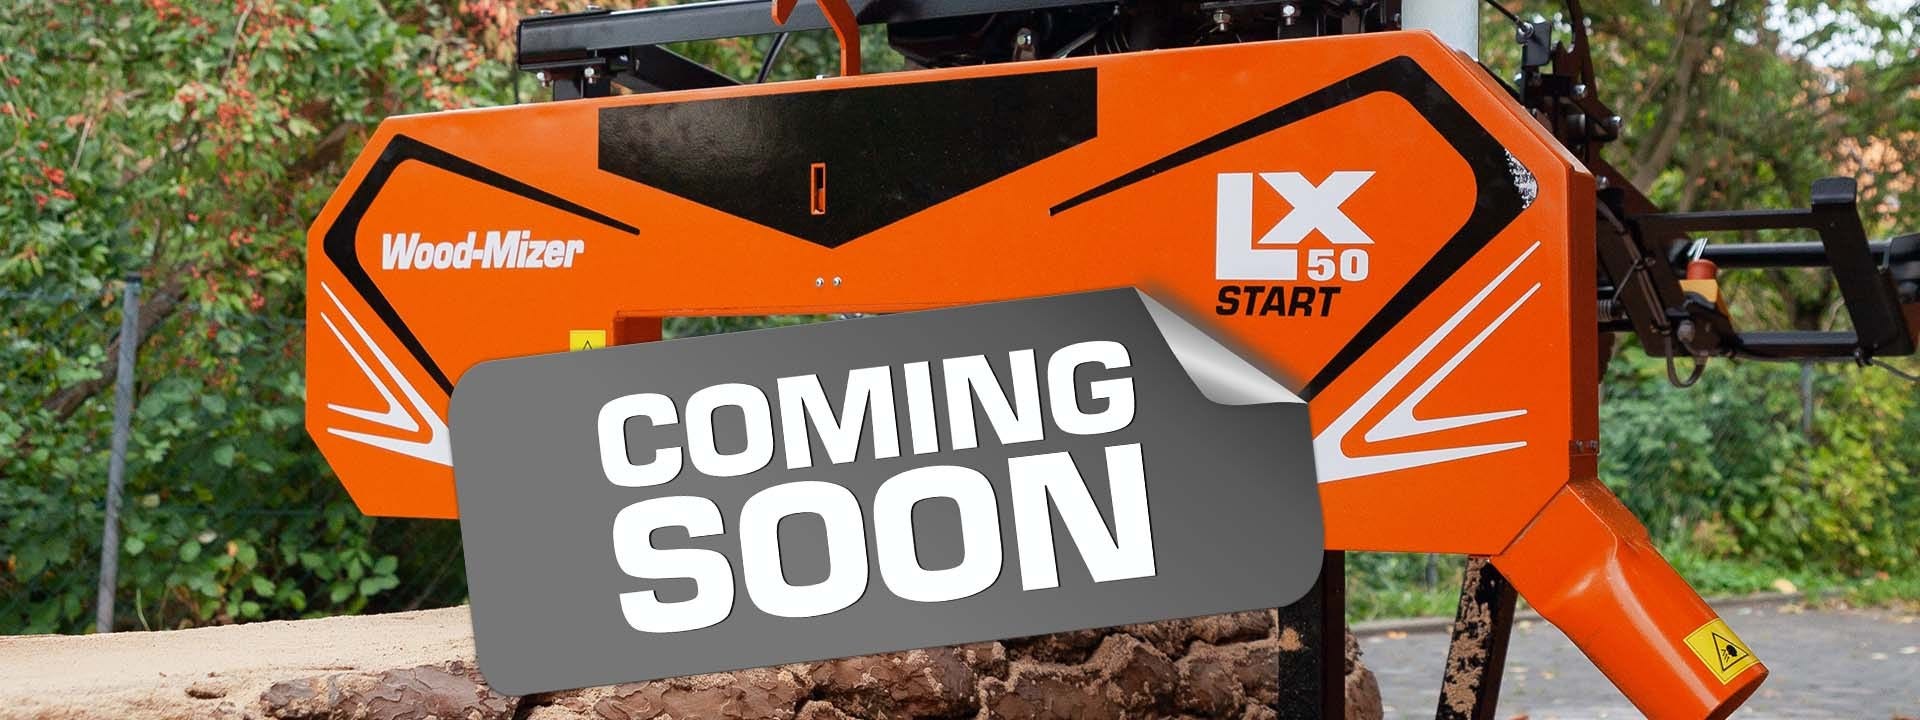 Новый станок LX50START от Wood-Mizer появится в продаже в ноябре 2022